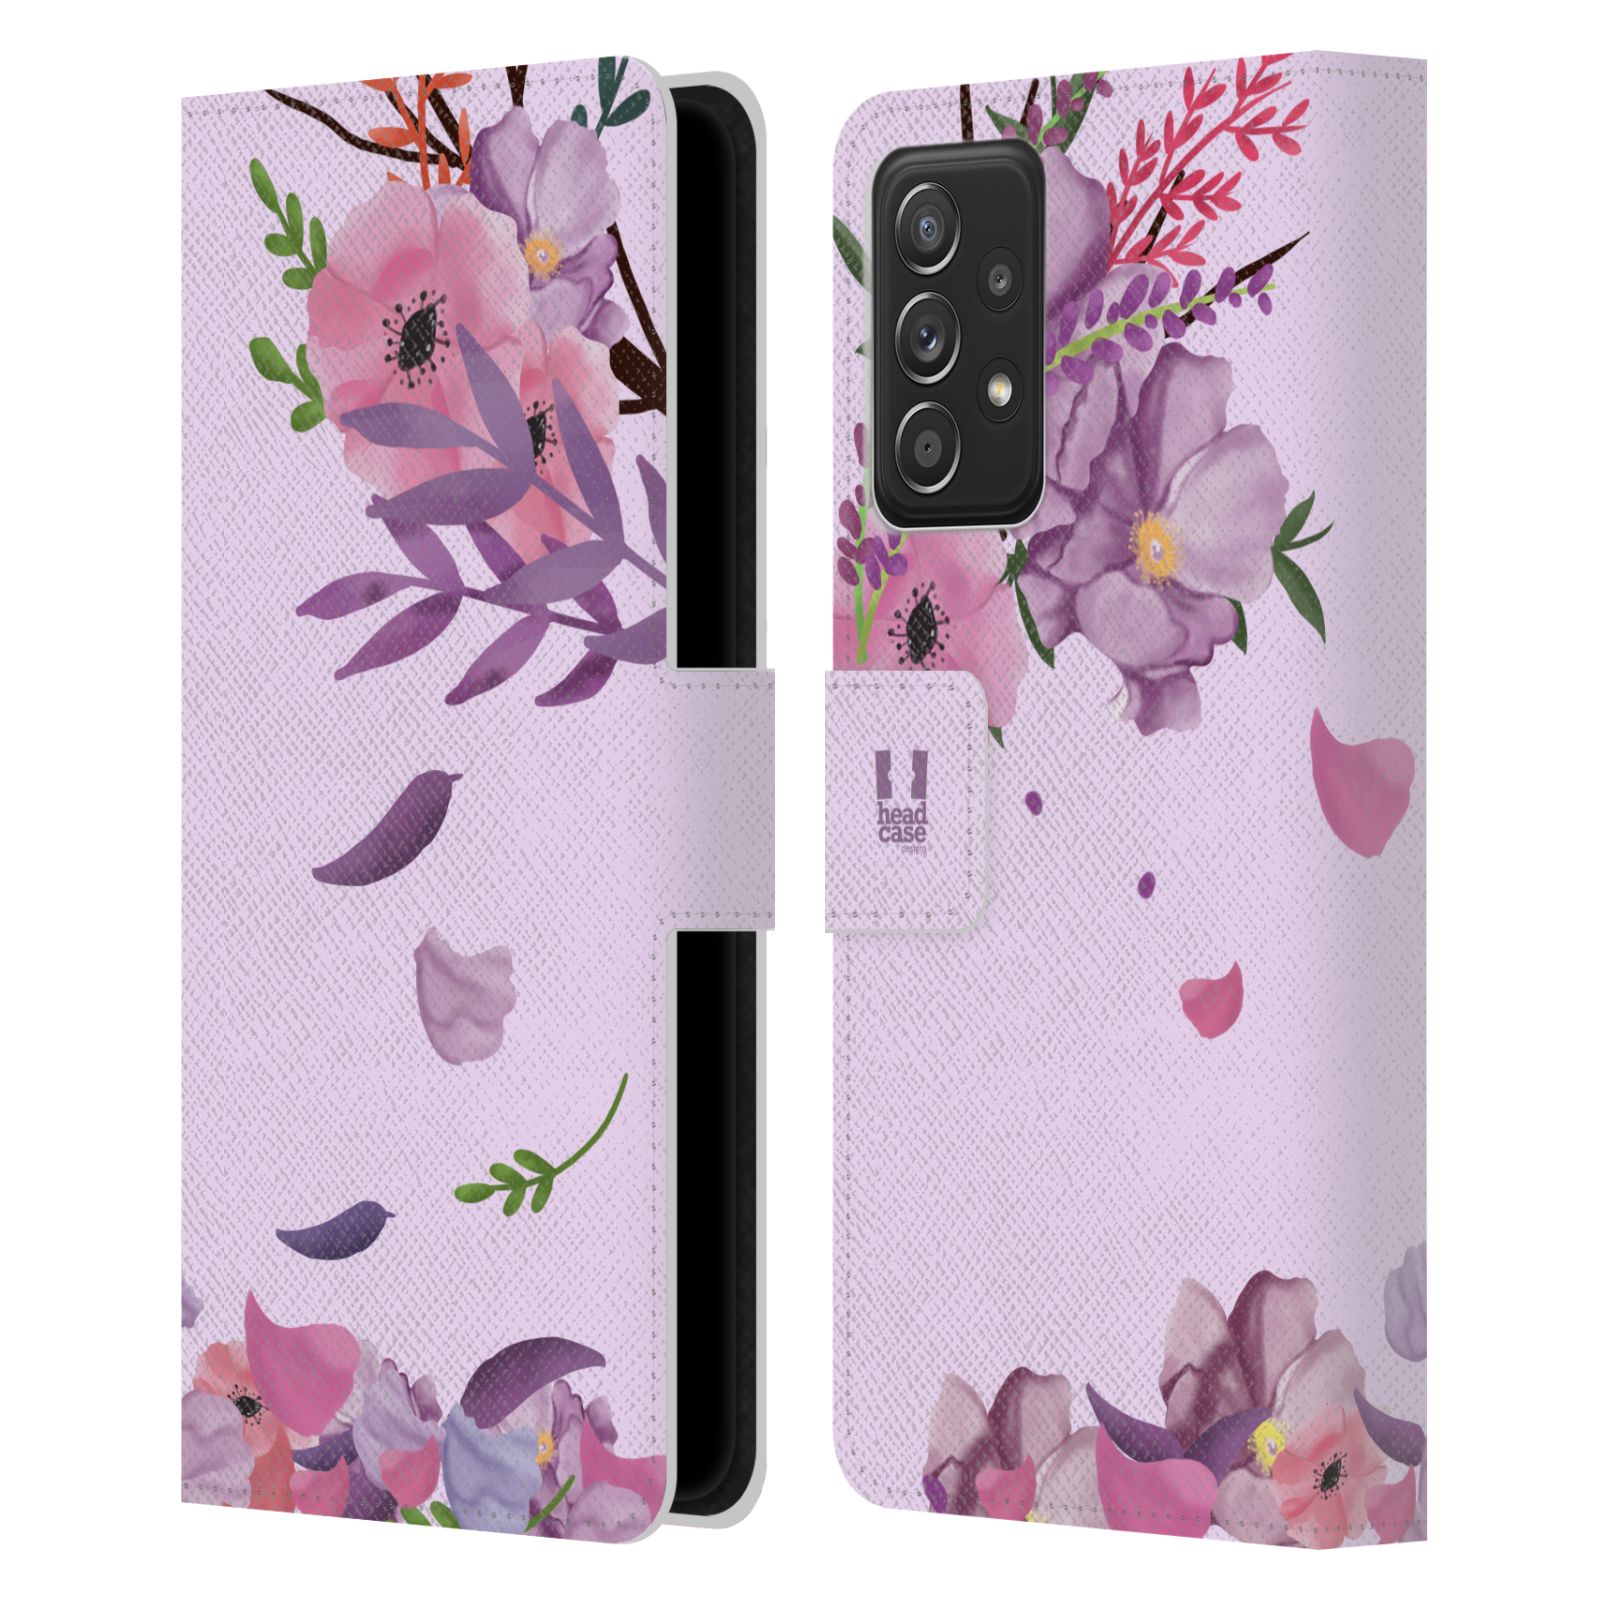 Pouzdro na mobil Samsung Galaxy A52 / A52 G - HEAD CASE - Rozkvetlé růže a listy růžová